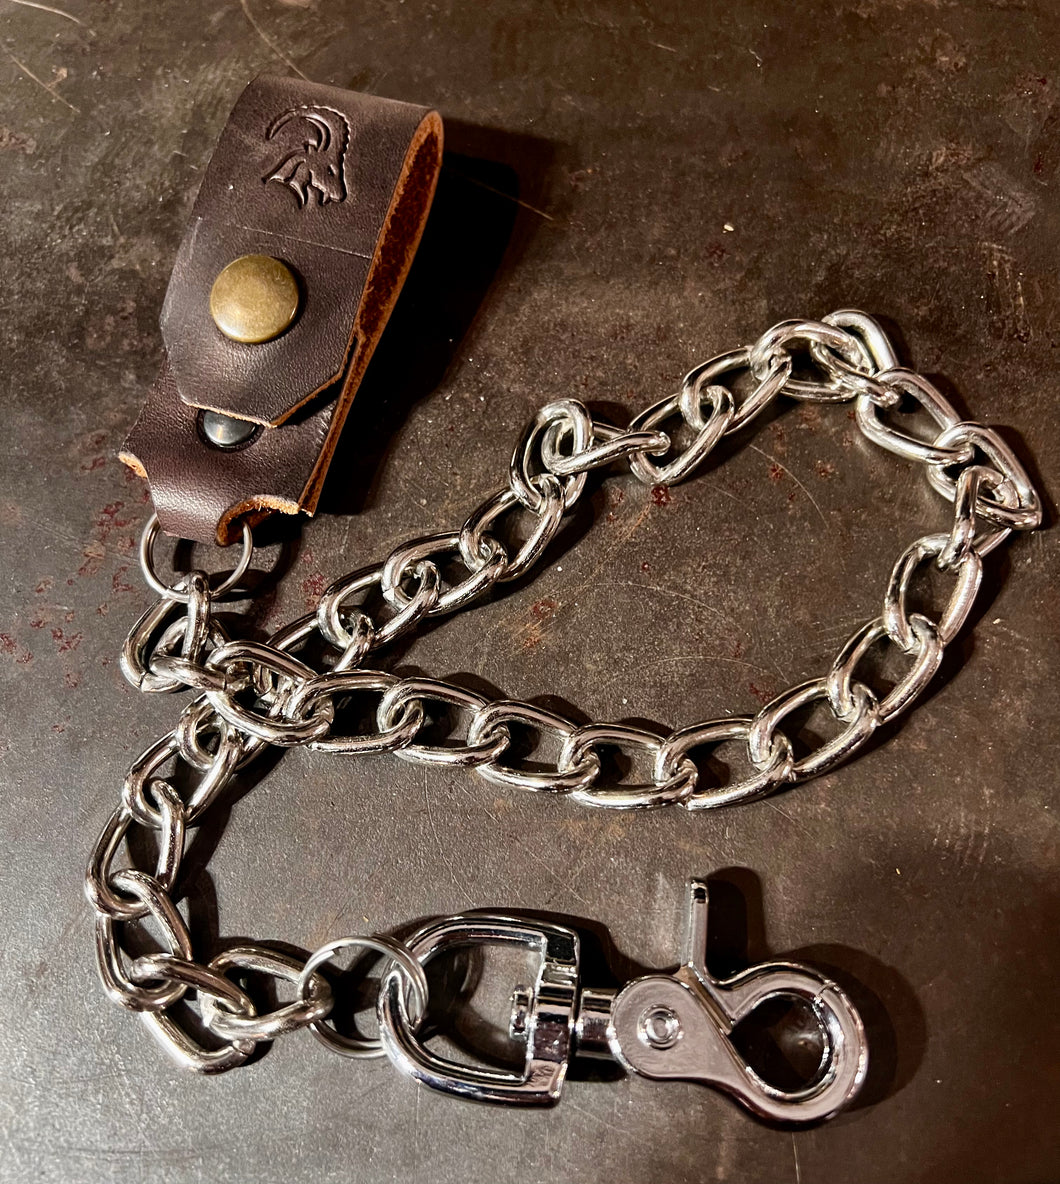 Walletchain SchlüsselKette oder Geldbörsenkette mit Lederschlaufe für den Gürtel